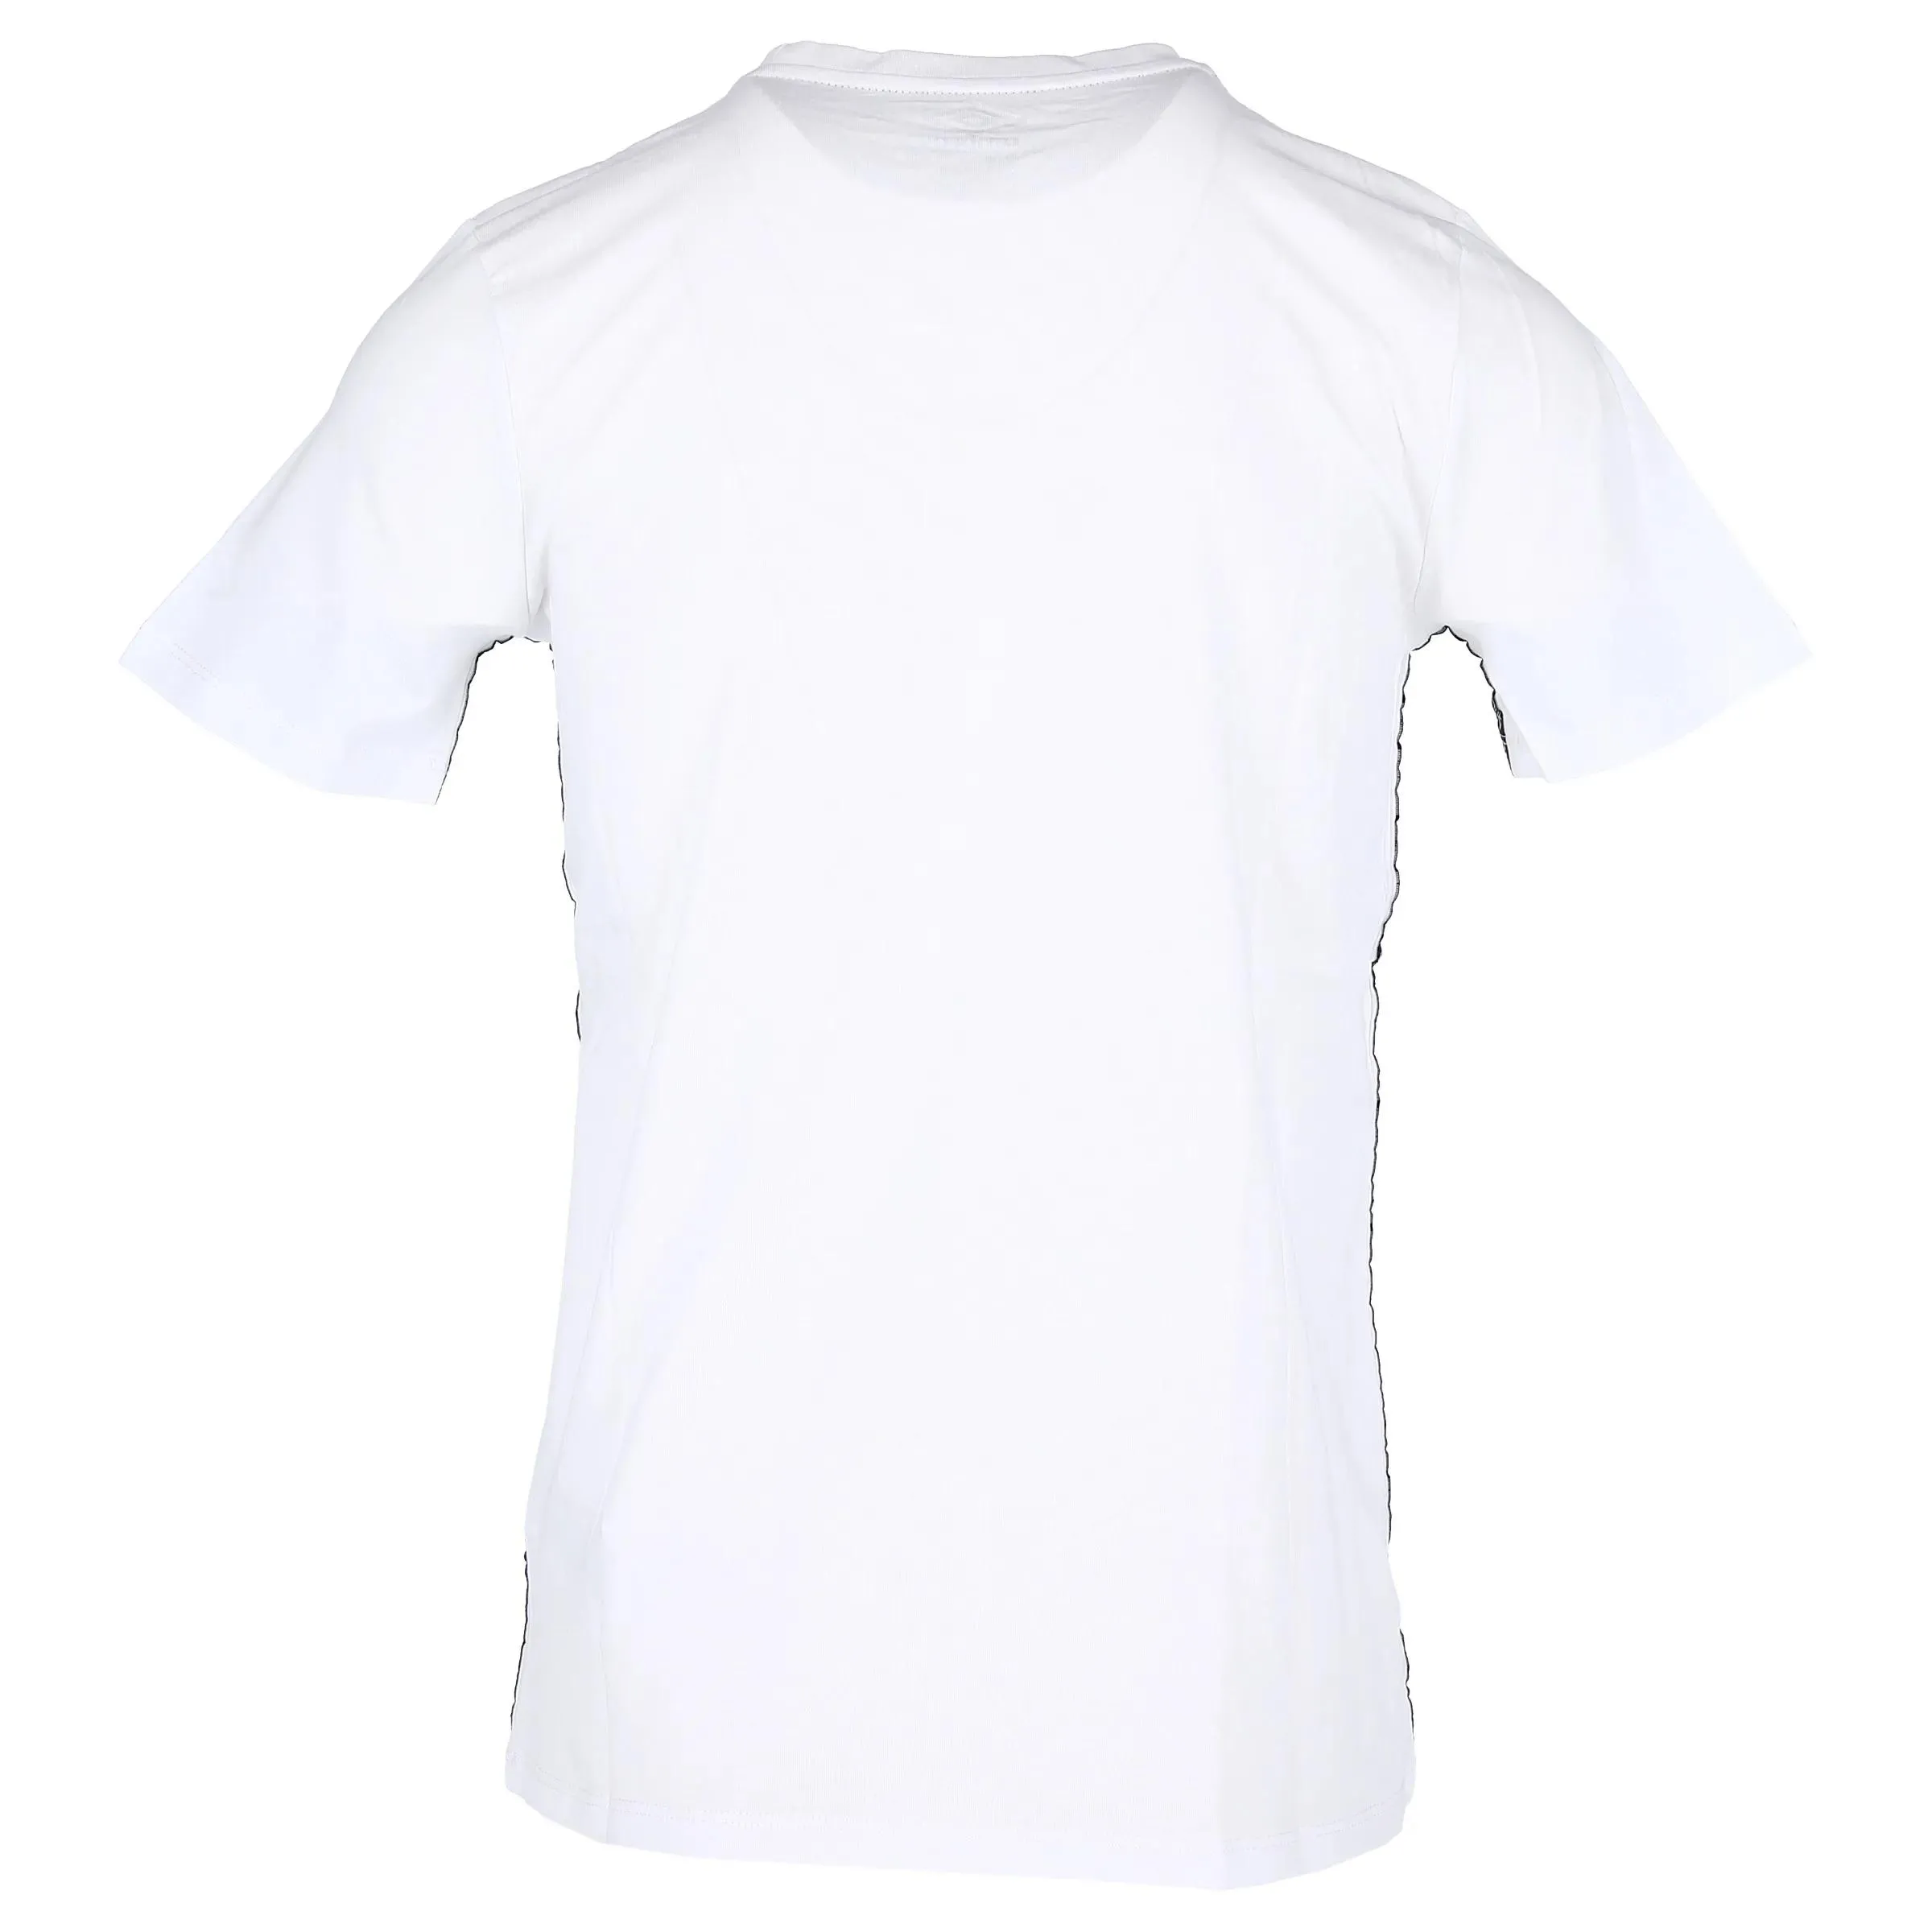 Umbro T-shirt TACKLE T SHIRT 